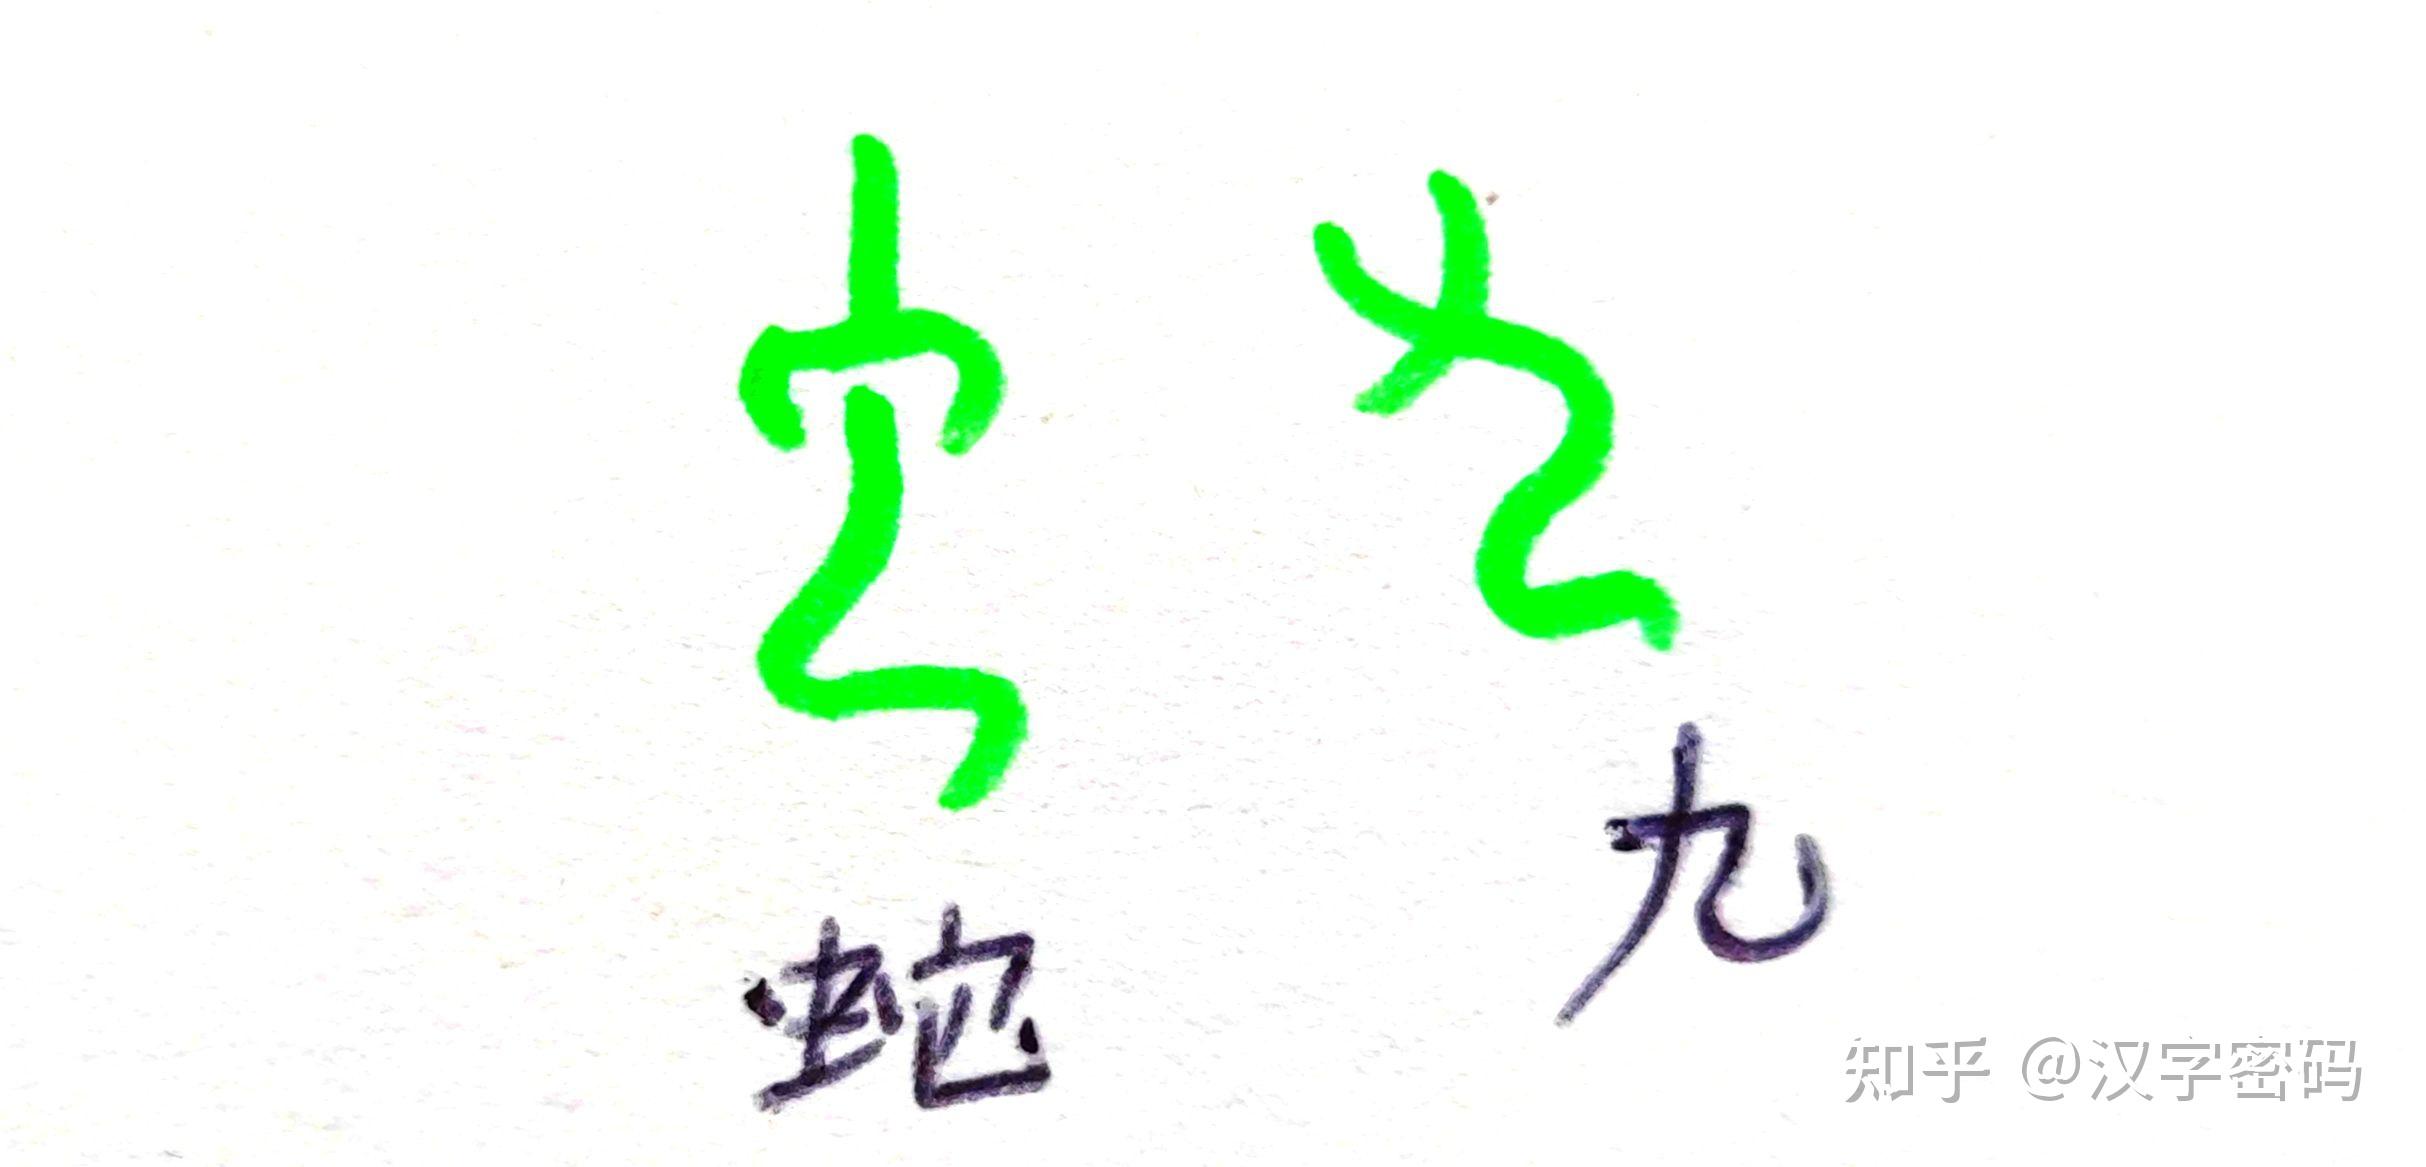 融右边的甲骨文虫(蛇)字,其实也是甲骨文九的变体字,是指达到天一合一